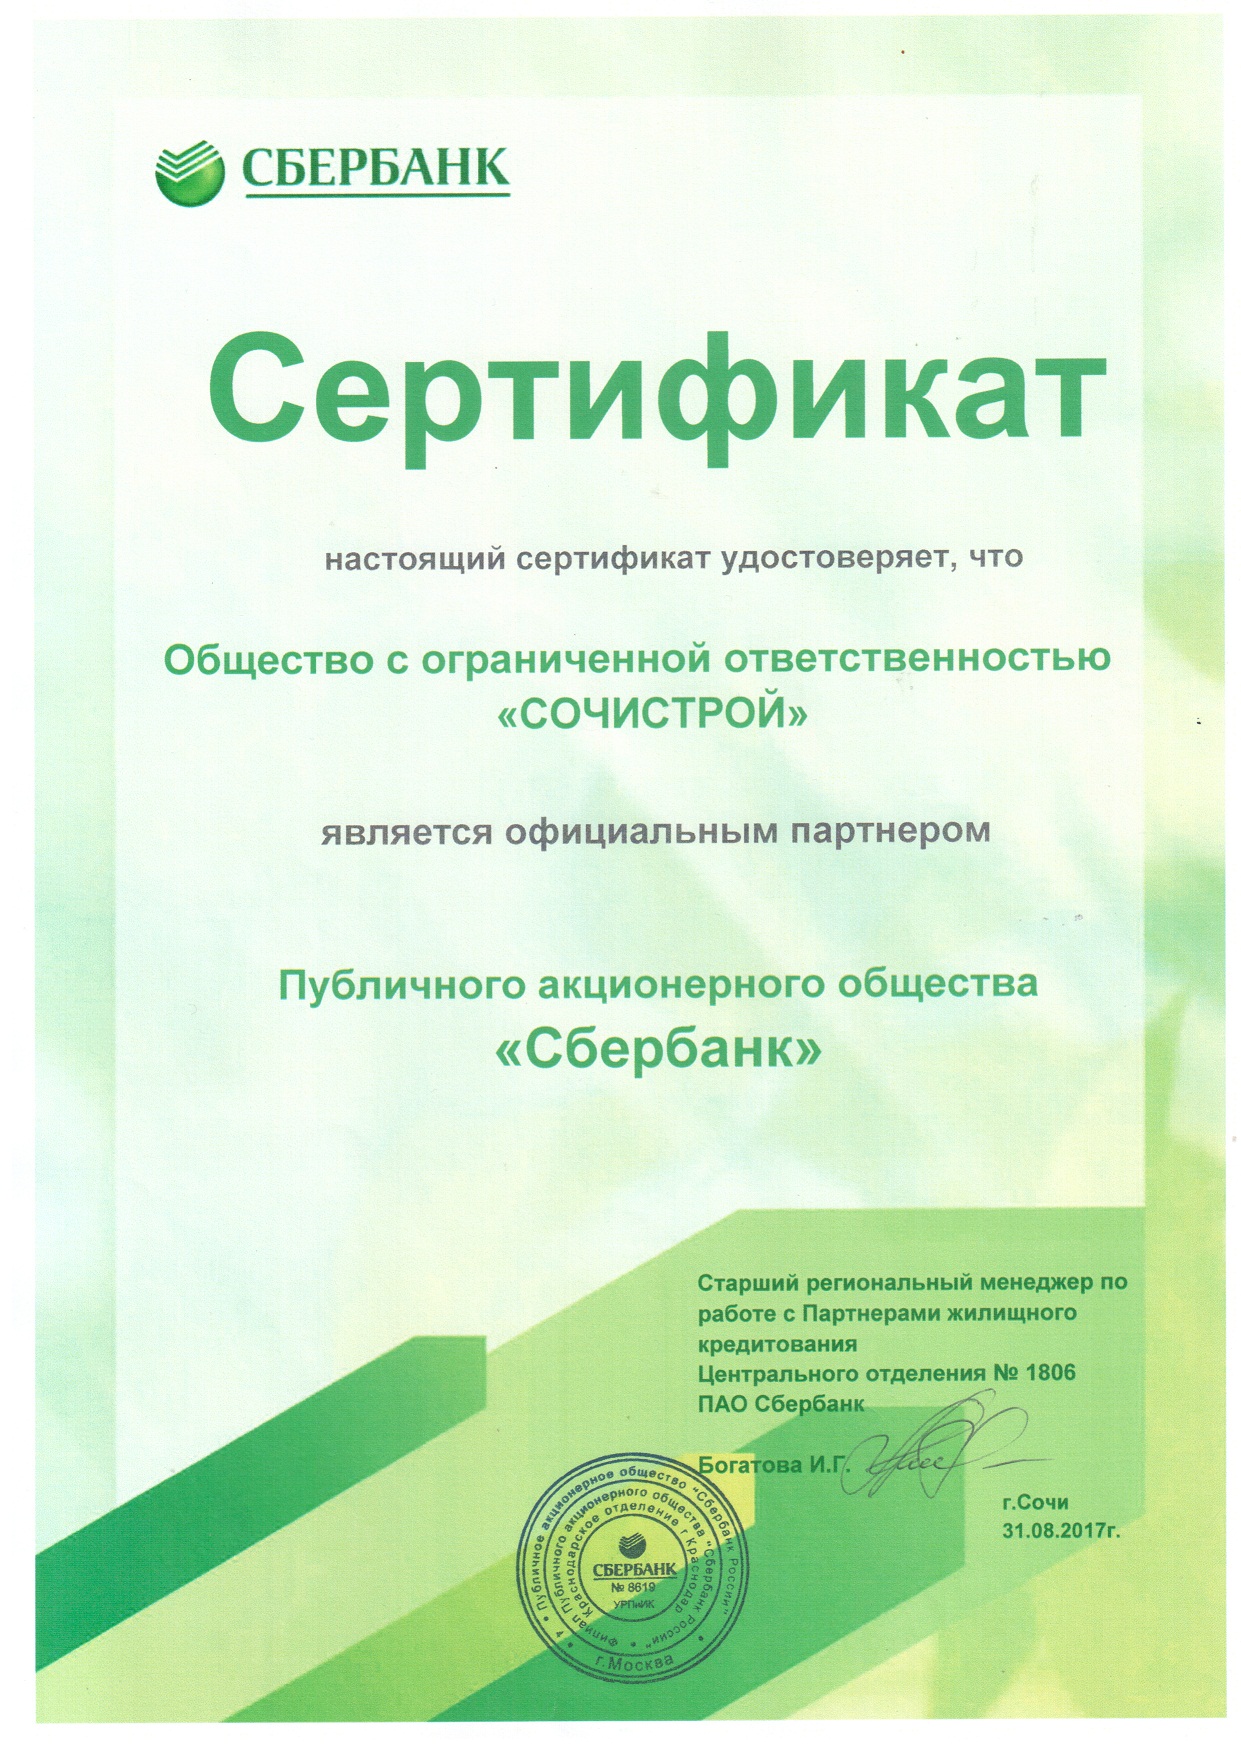 Сертификат официального партнера ПАО "Сбербанк"